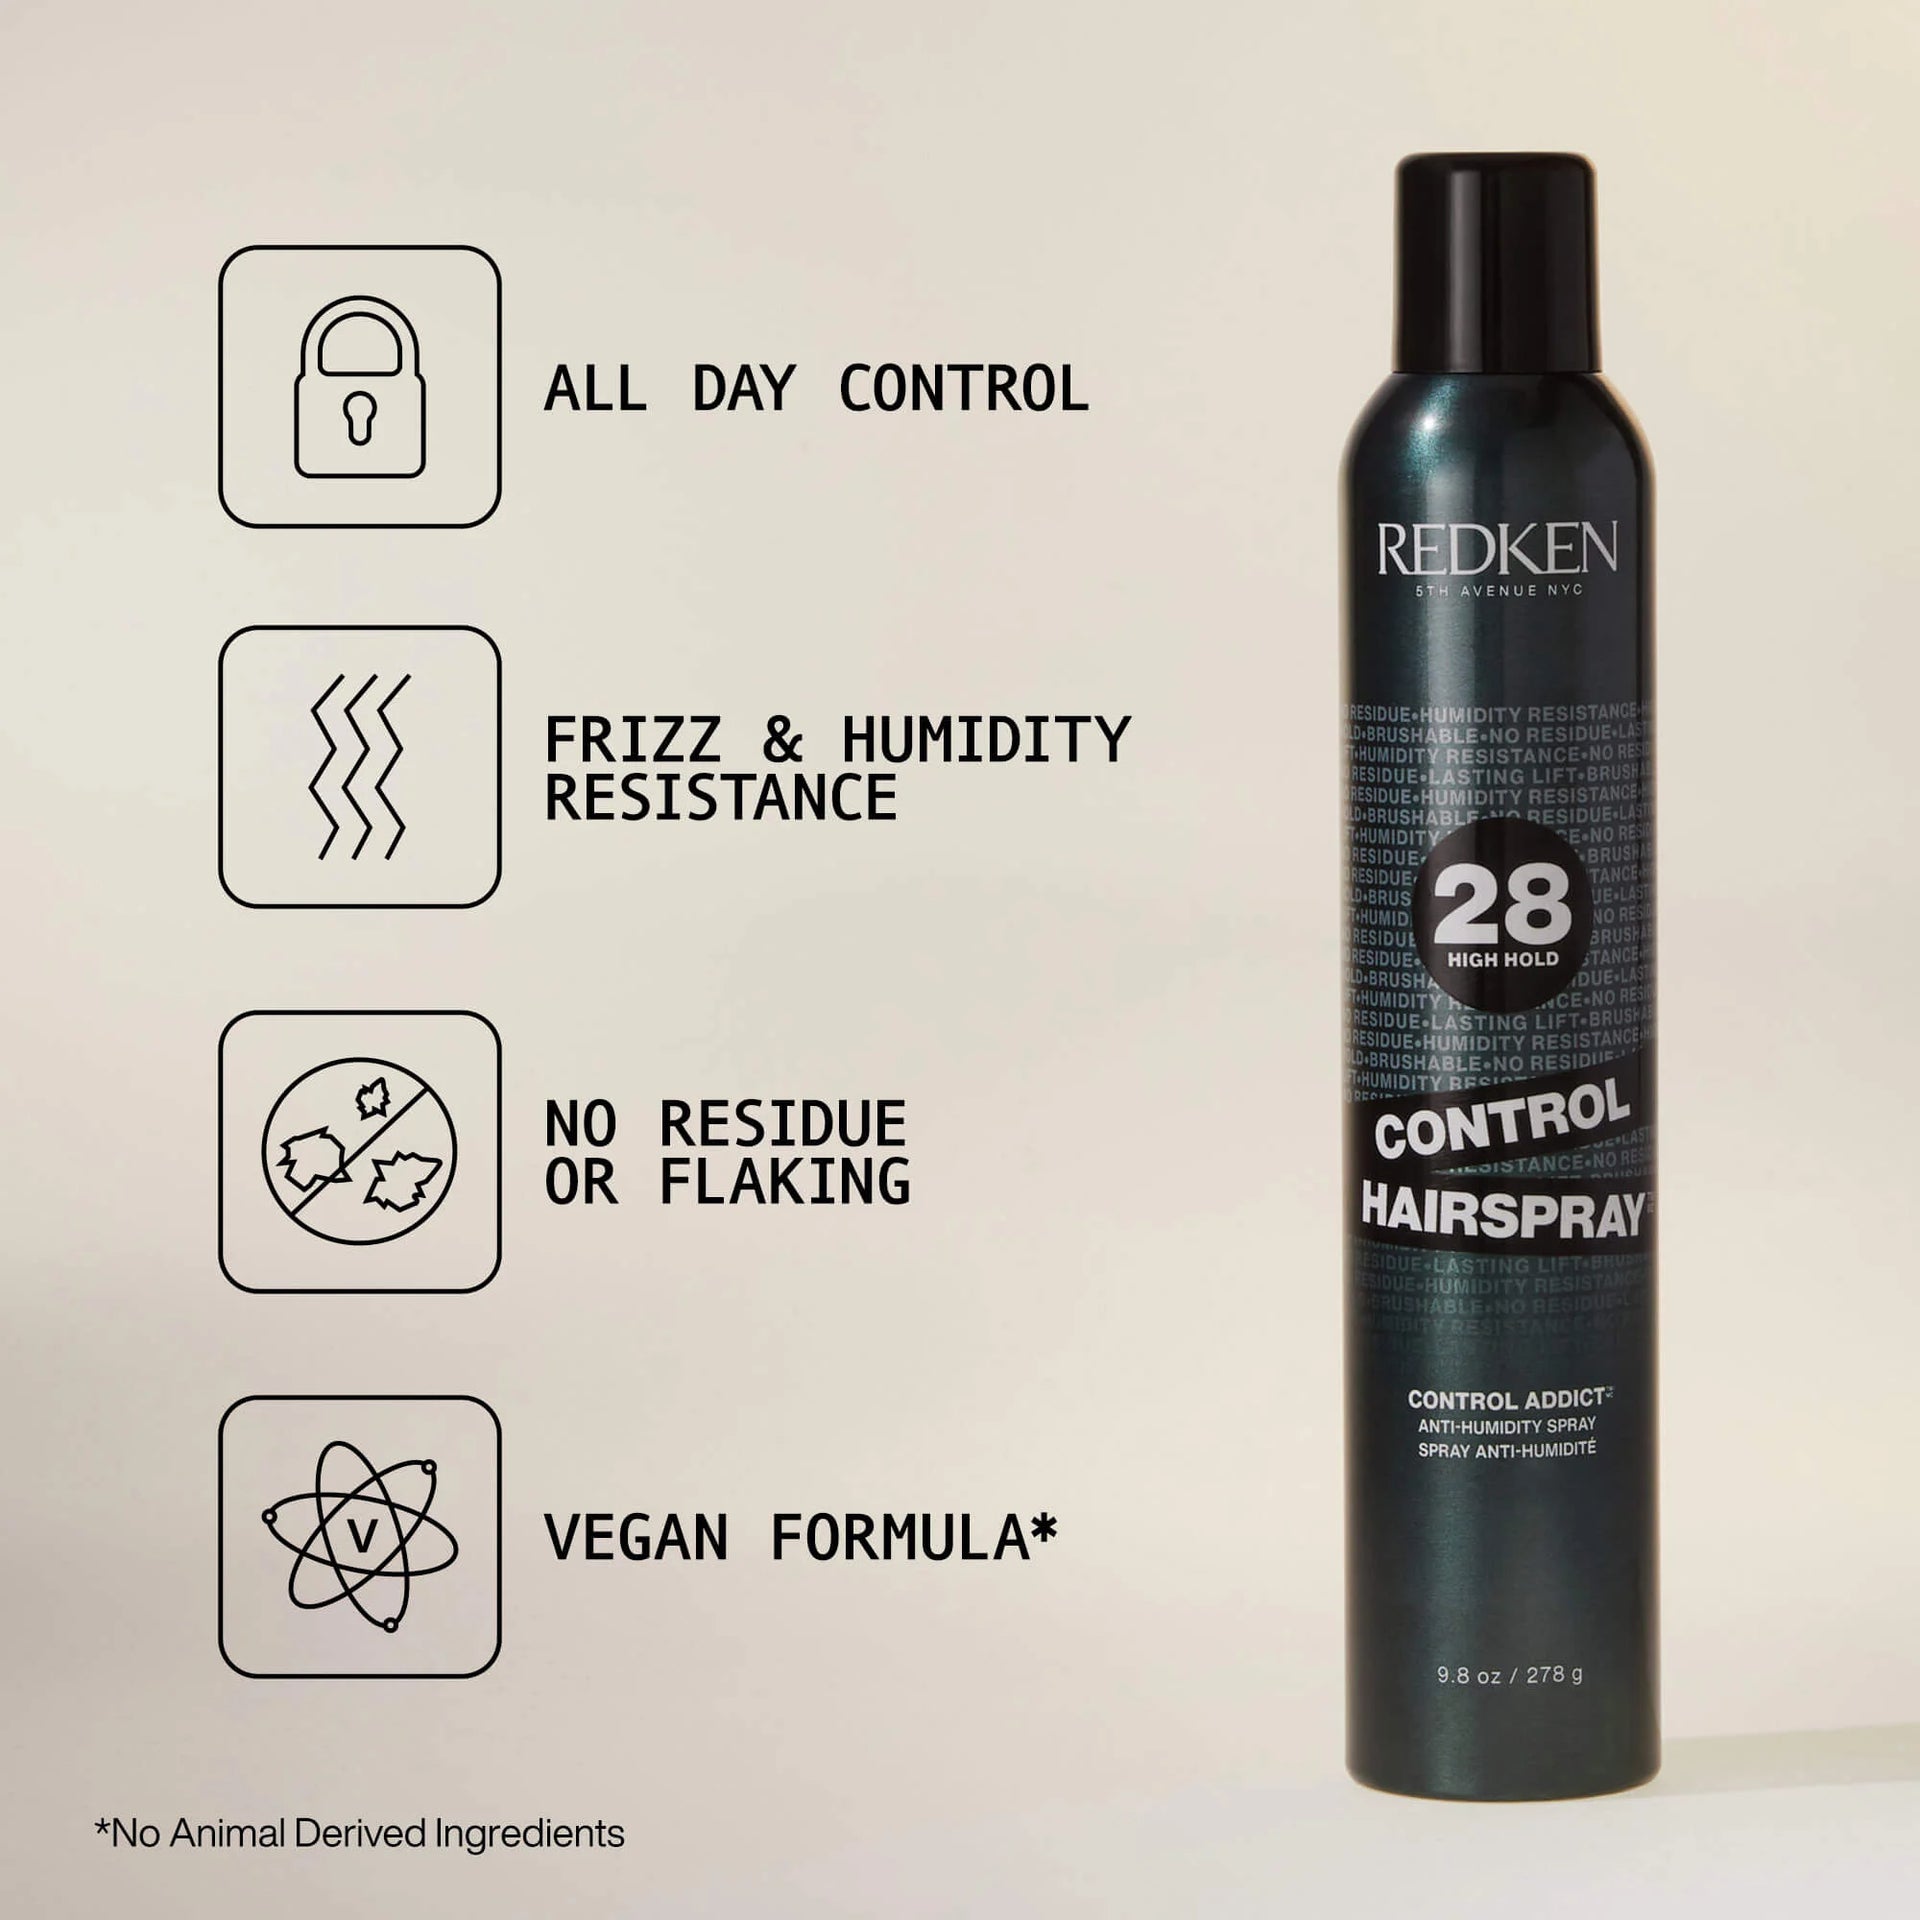 Redken Control Hairspray